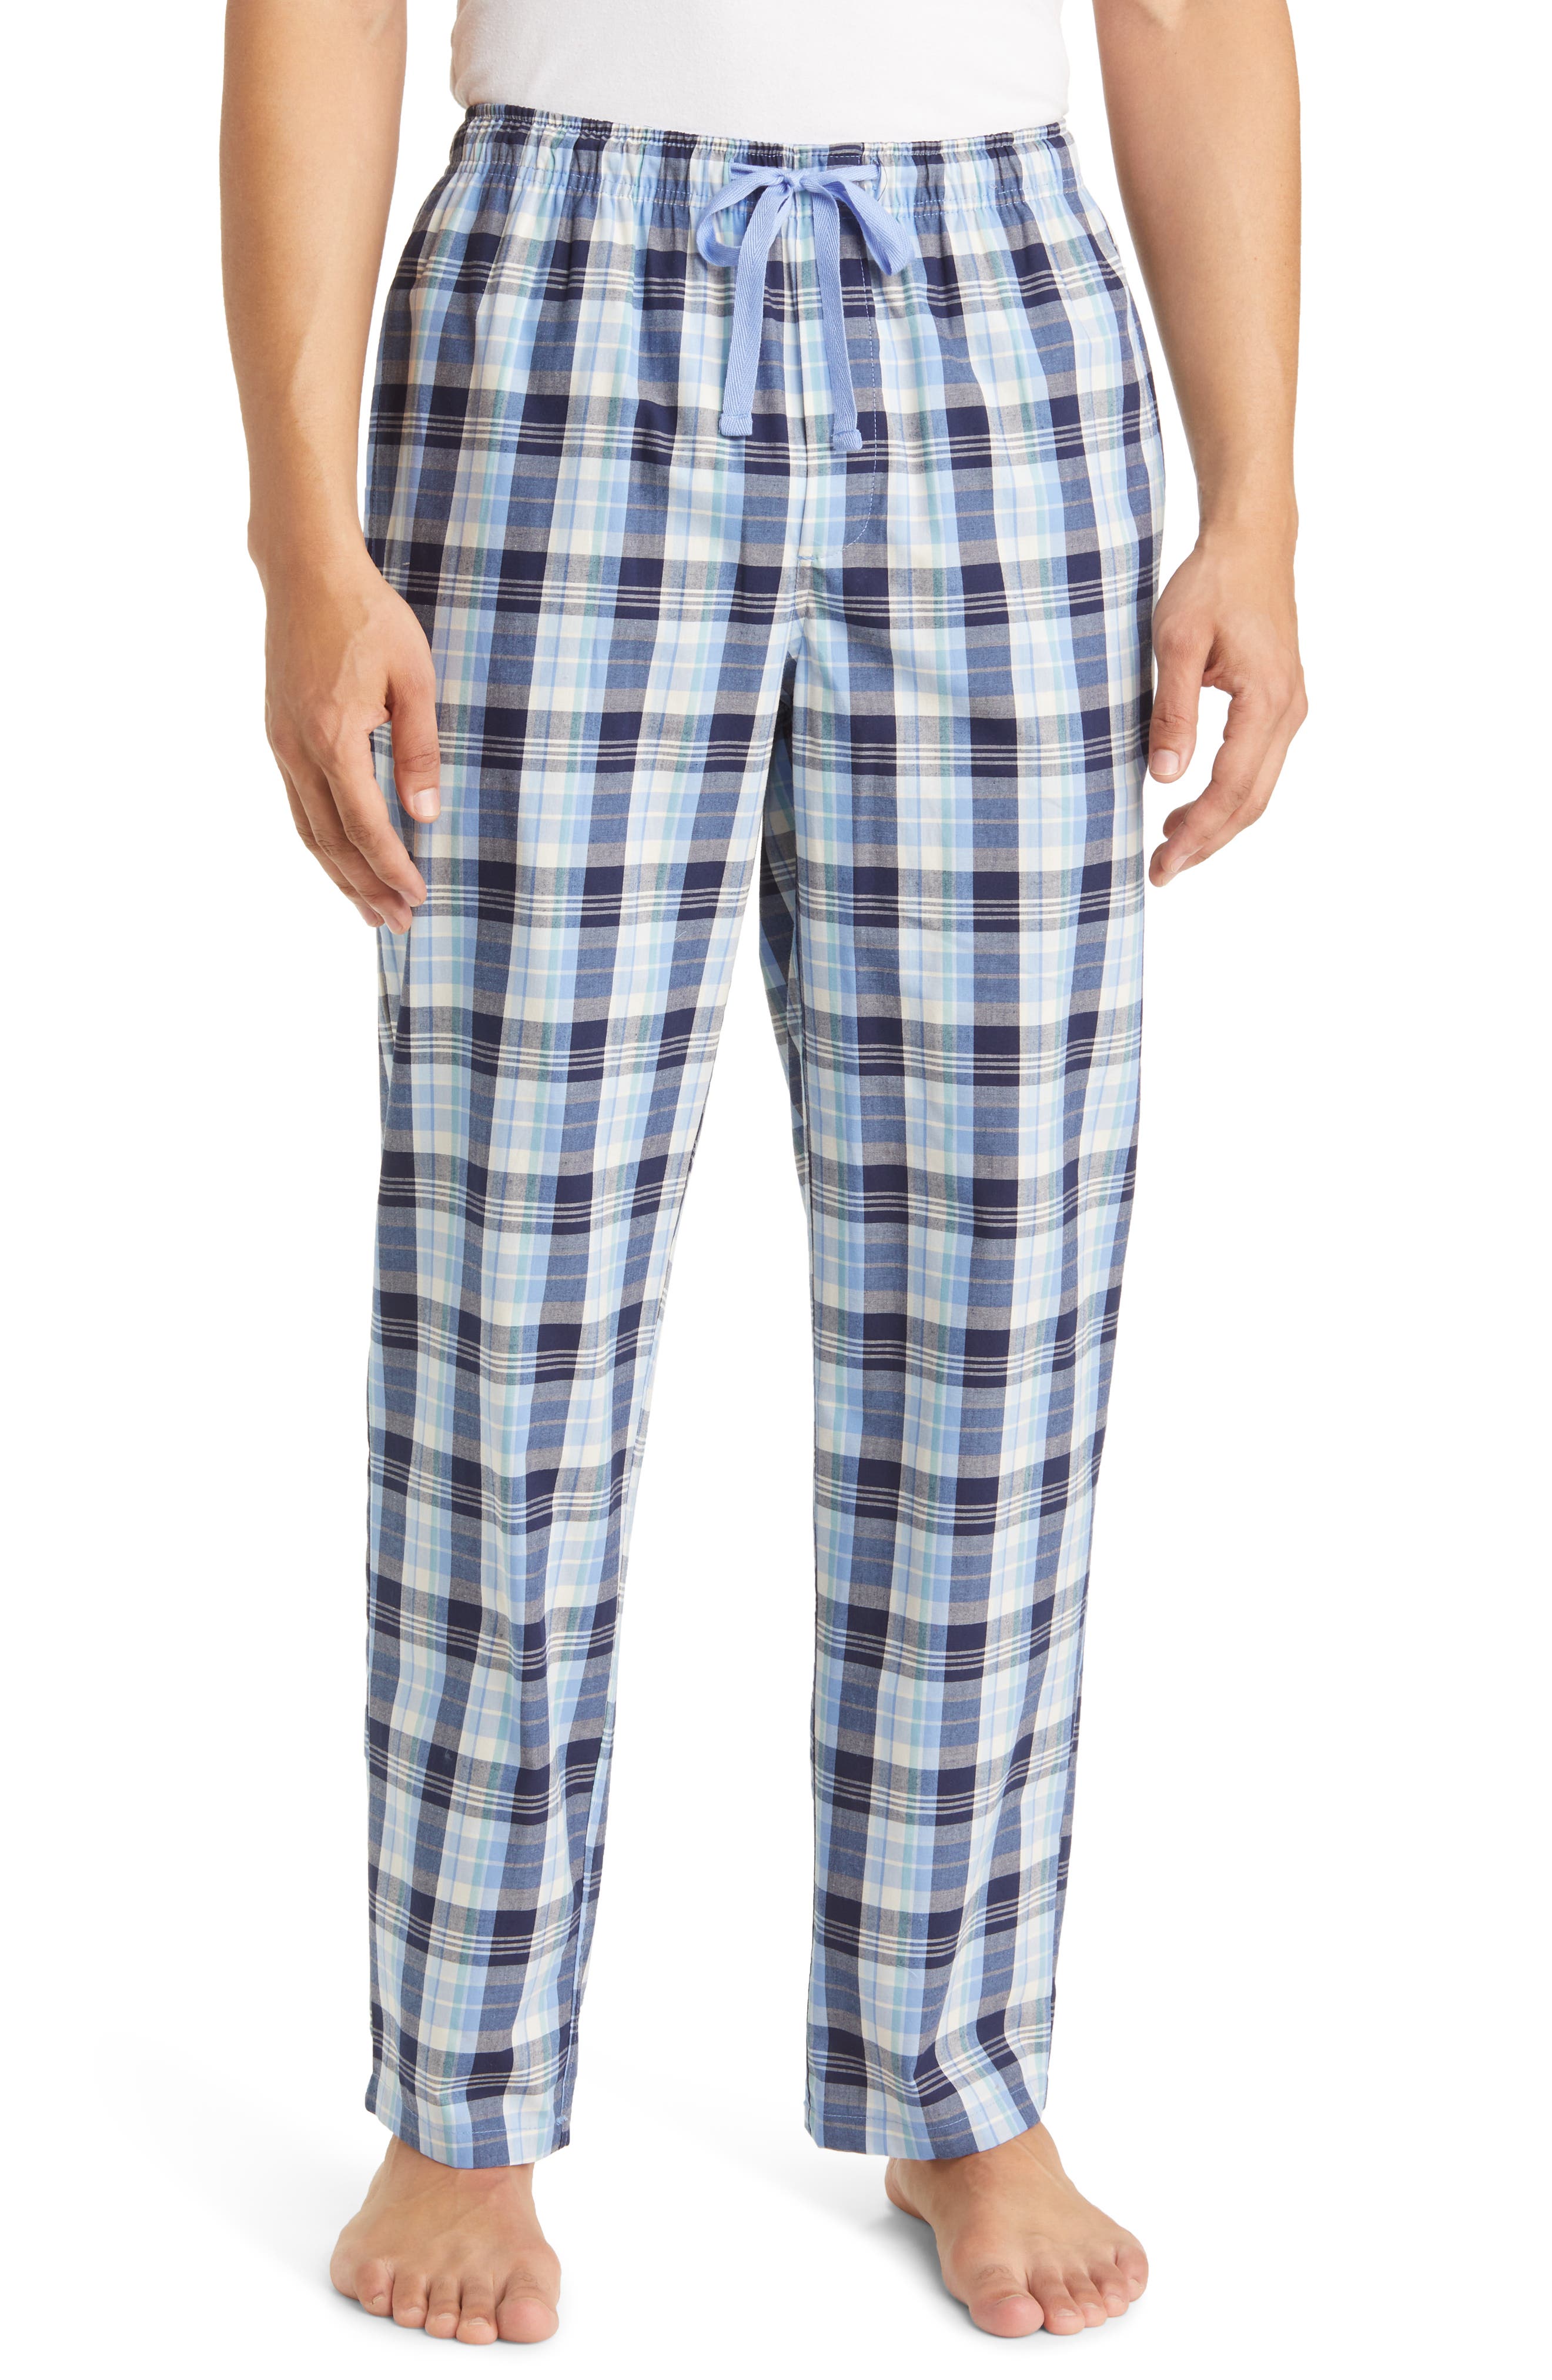 Big Boys/Girls Christmas Cotton Plaid Pajama Pants 